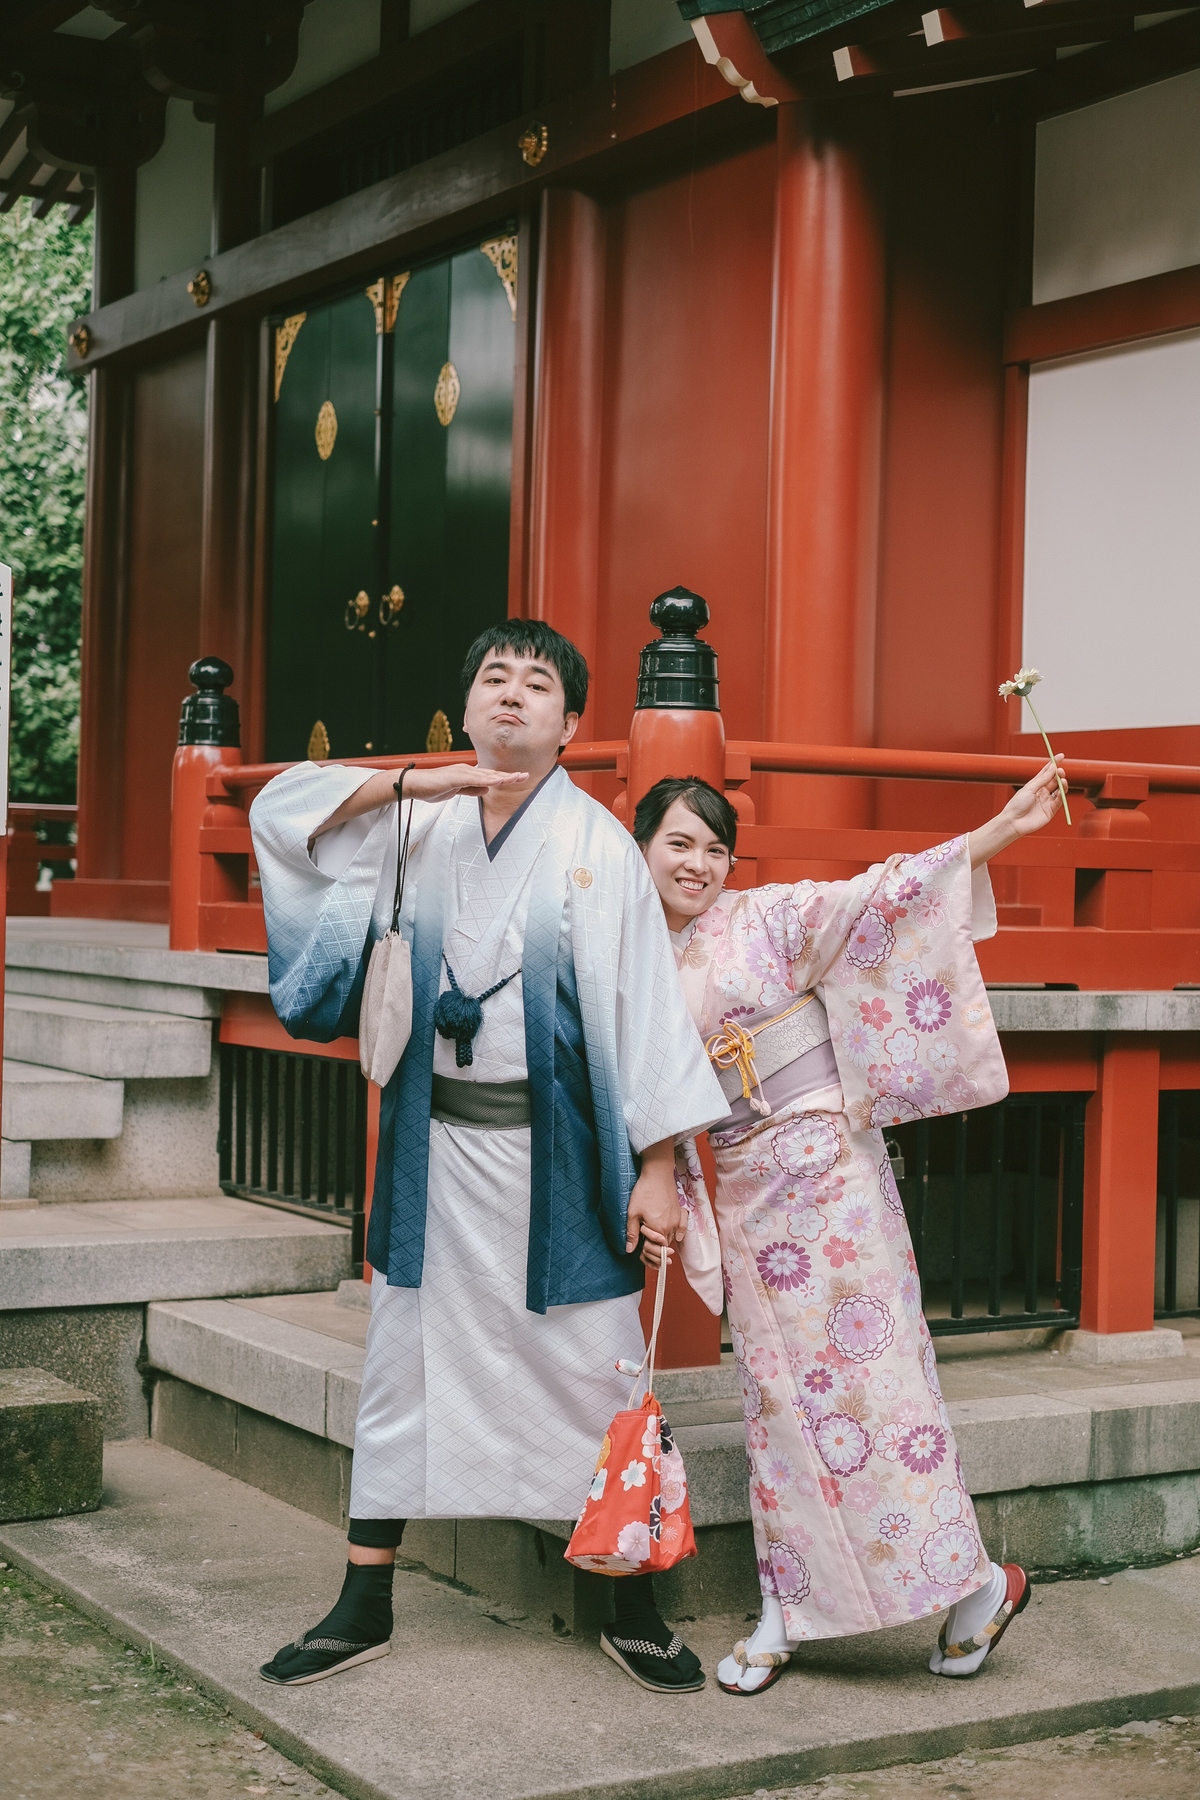 Chào mừng bạn đến với bộ sưu tập ảnh cưới kimono đầy màu sắc và lãng mạn. Hứa hẹn sẽ làm bạn ngạc nhiên và phấn khích khi chiêm ngưỡng màn trình diễn của các cặp đôi trong những bộ kimono cổ điển nhưng vẫn mang tính hiện đại. Hãy xem ngay nhé!